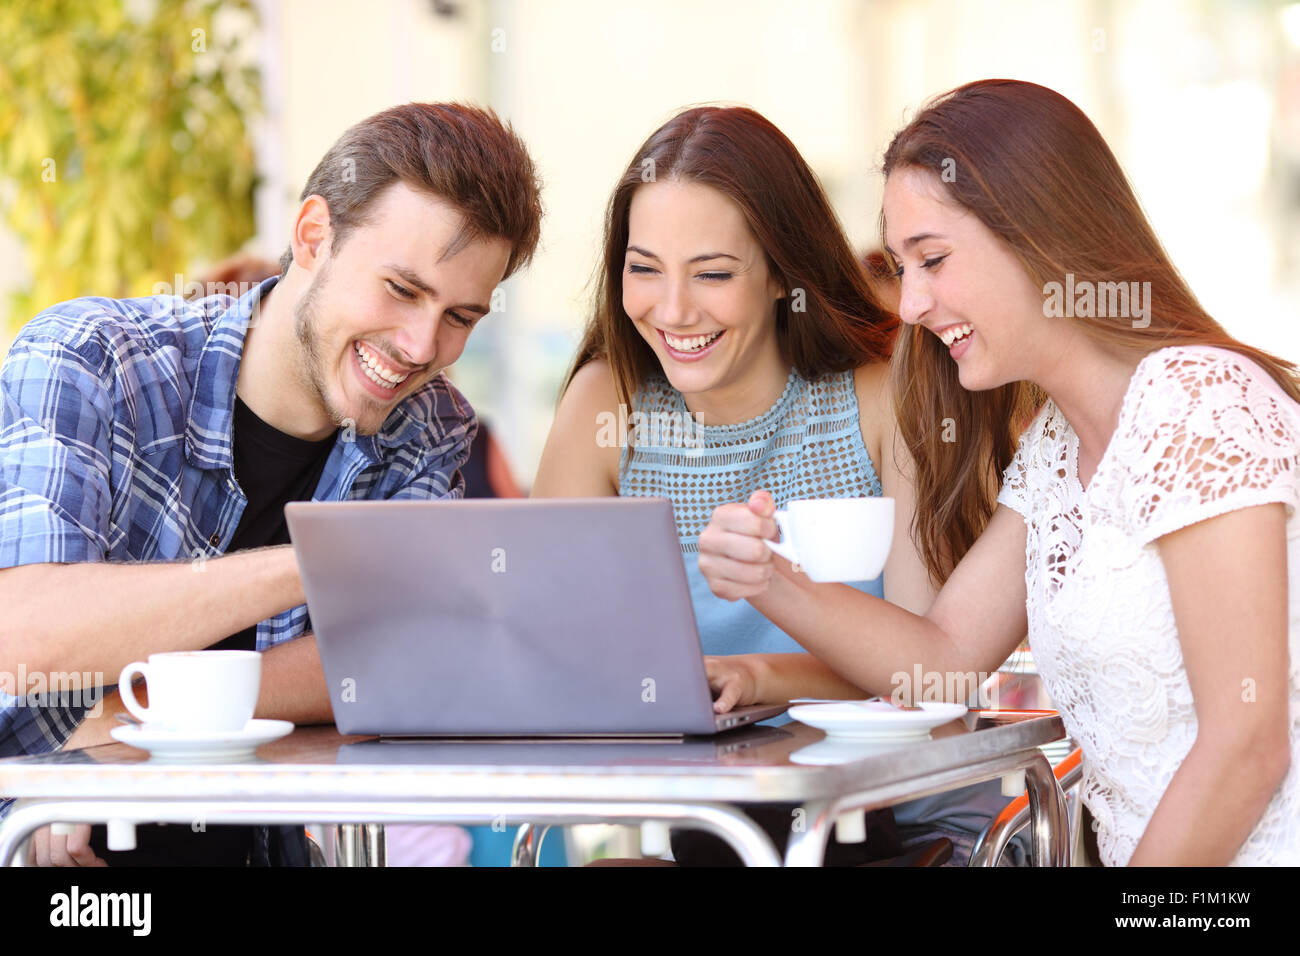 Trois amis heureux de regarder des vidéos sur un ordinateur portable dans un café terrasse Banque D'Images